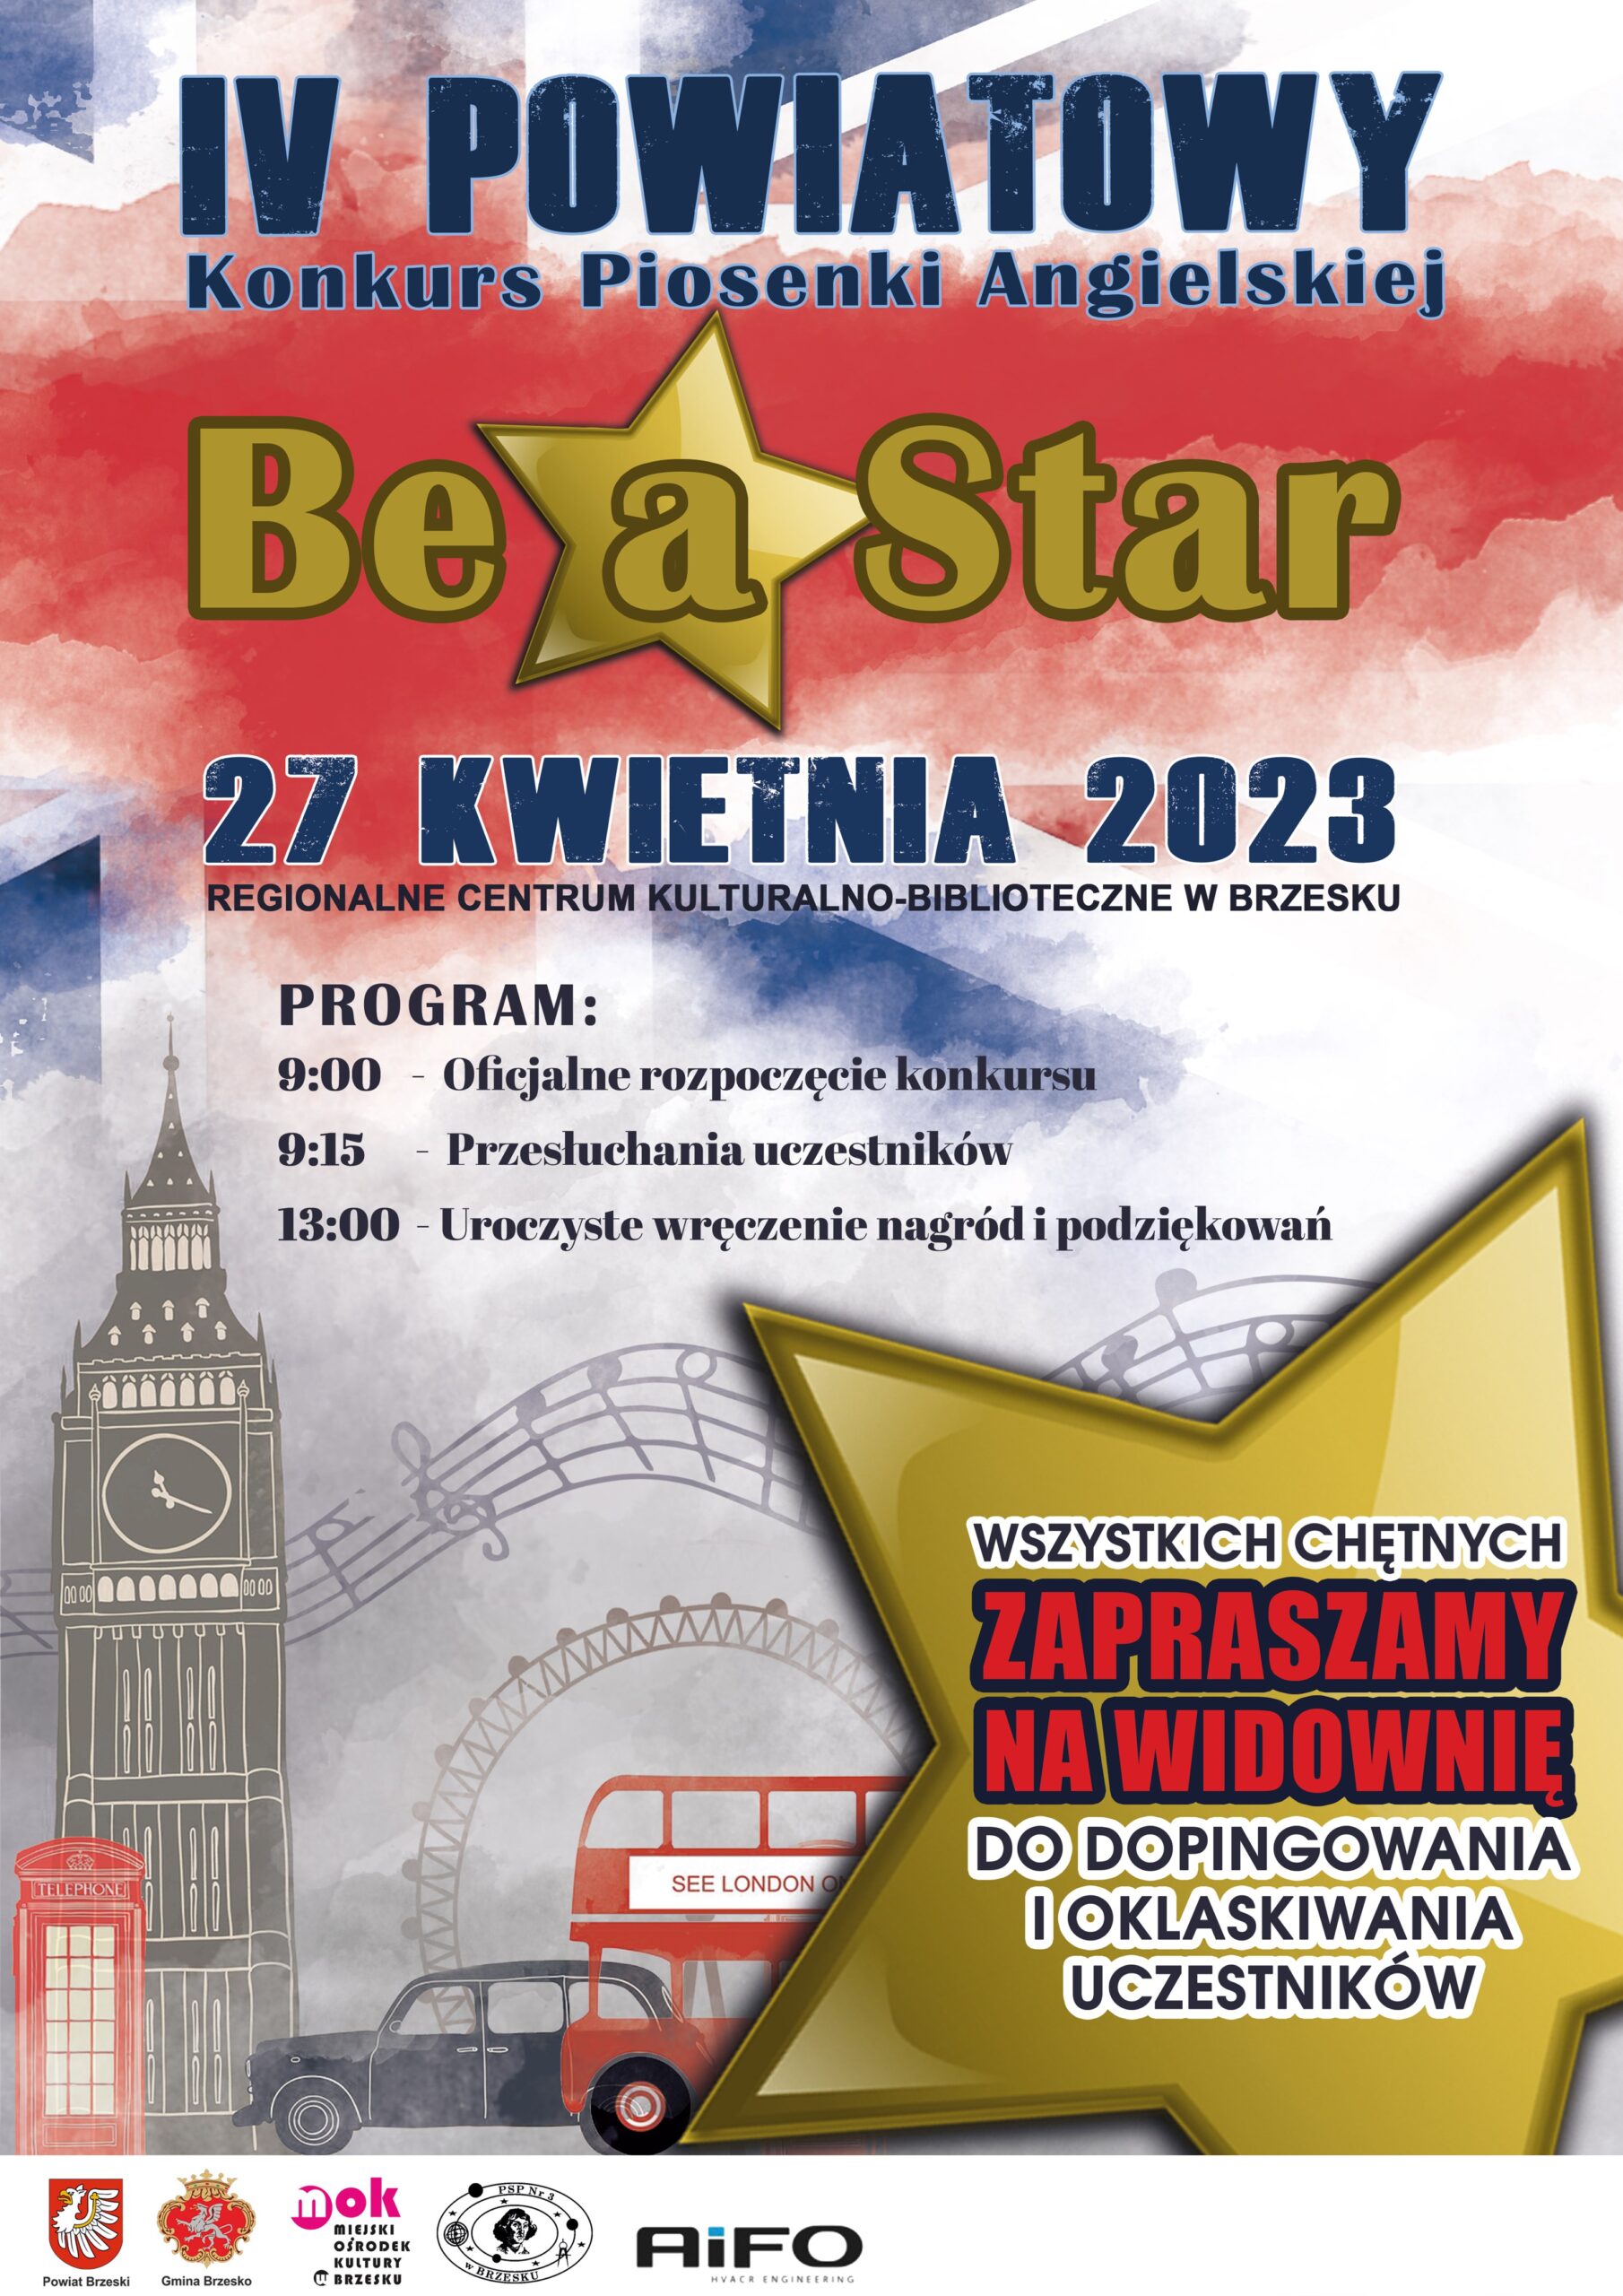 IV Powiatowy Konkurs Piosenki Angielskiej BE A STAR – 27 kwietnia 2023